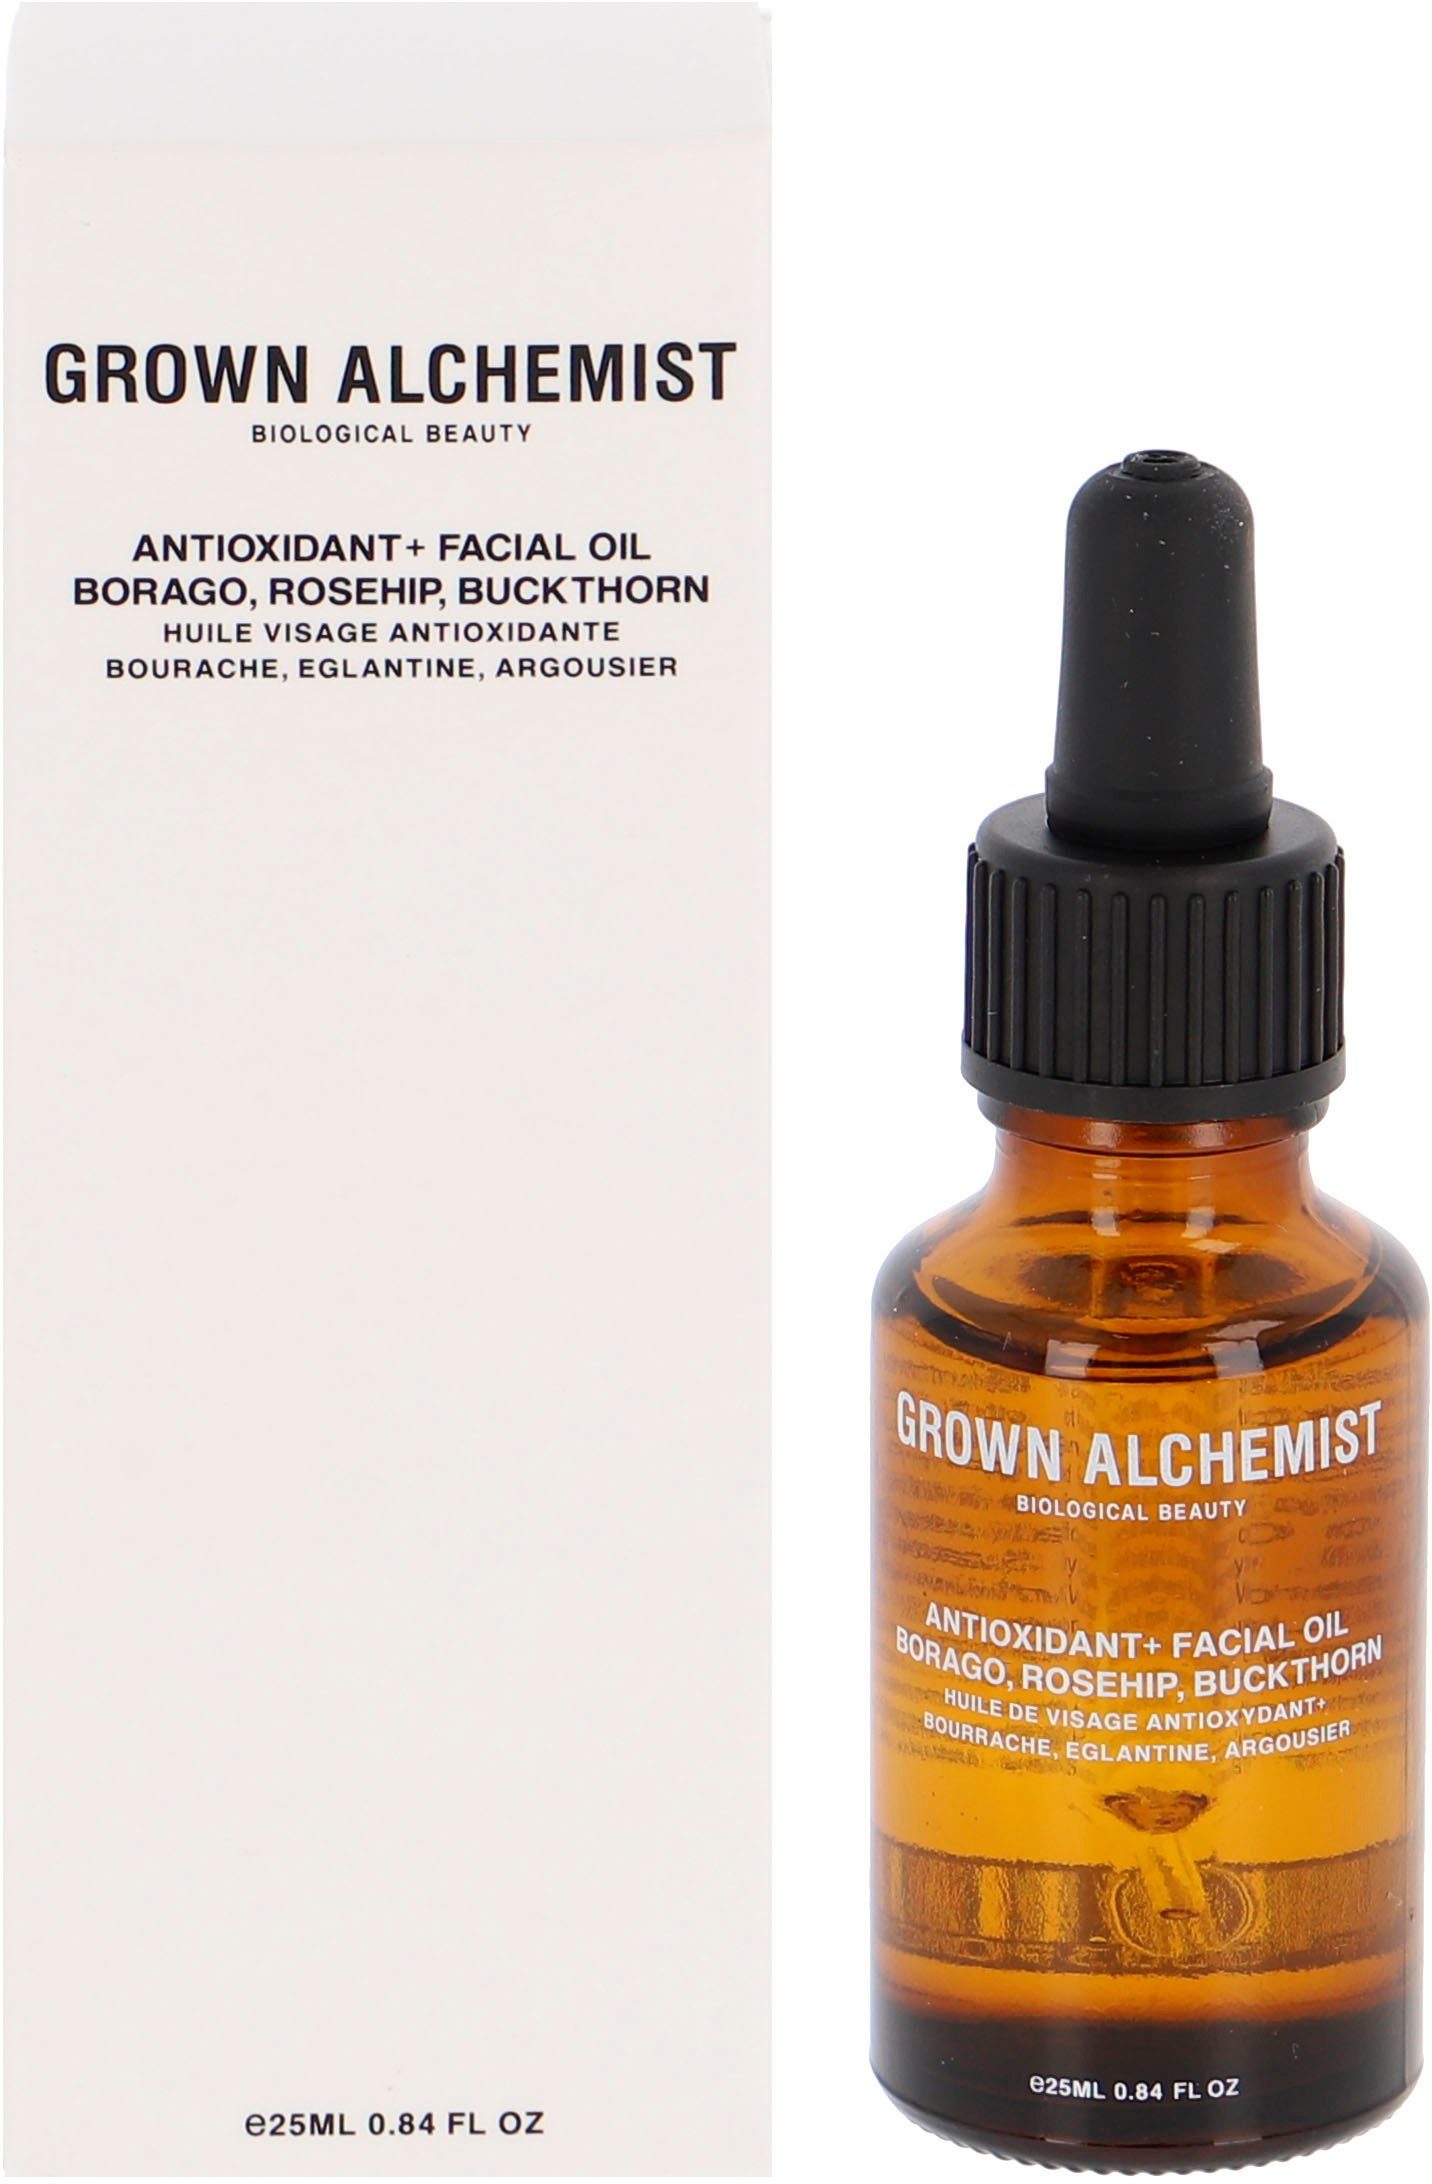 GROWN ALCHEMIST Oil, Facial Anti-Oxidant+ Buckthorn Gesichtsöl Borago, Rosehip